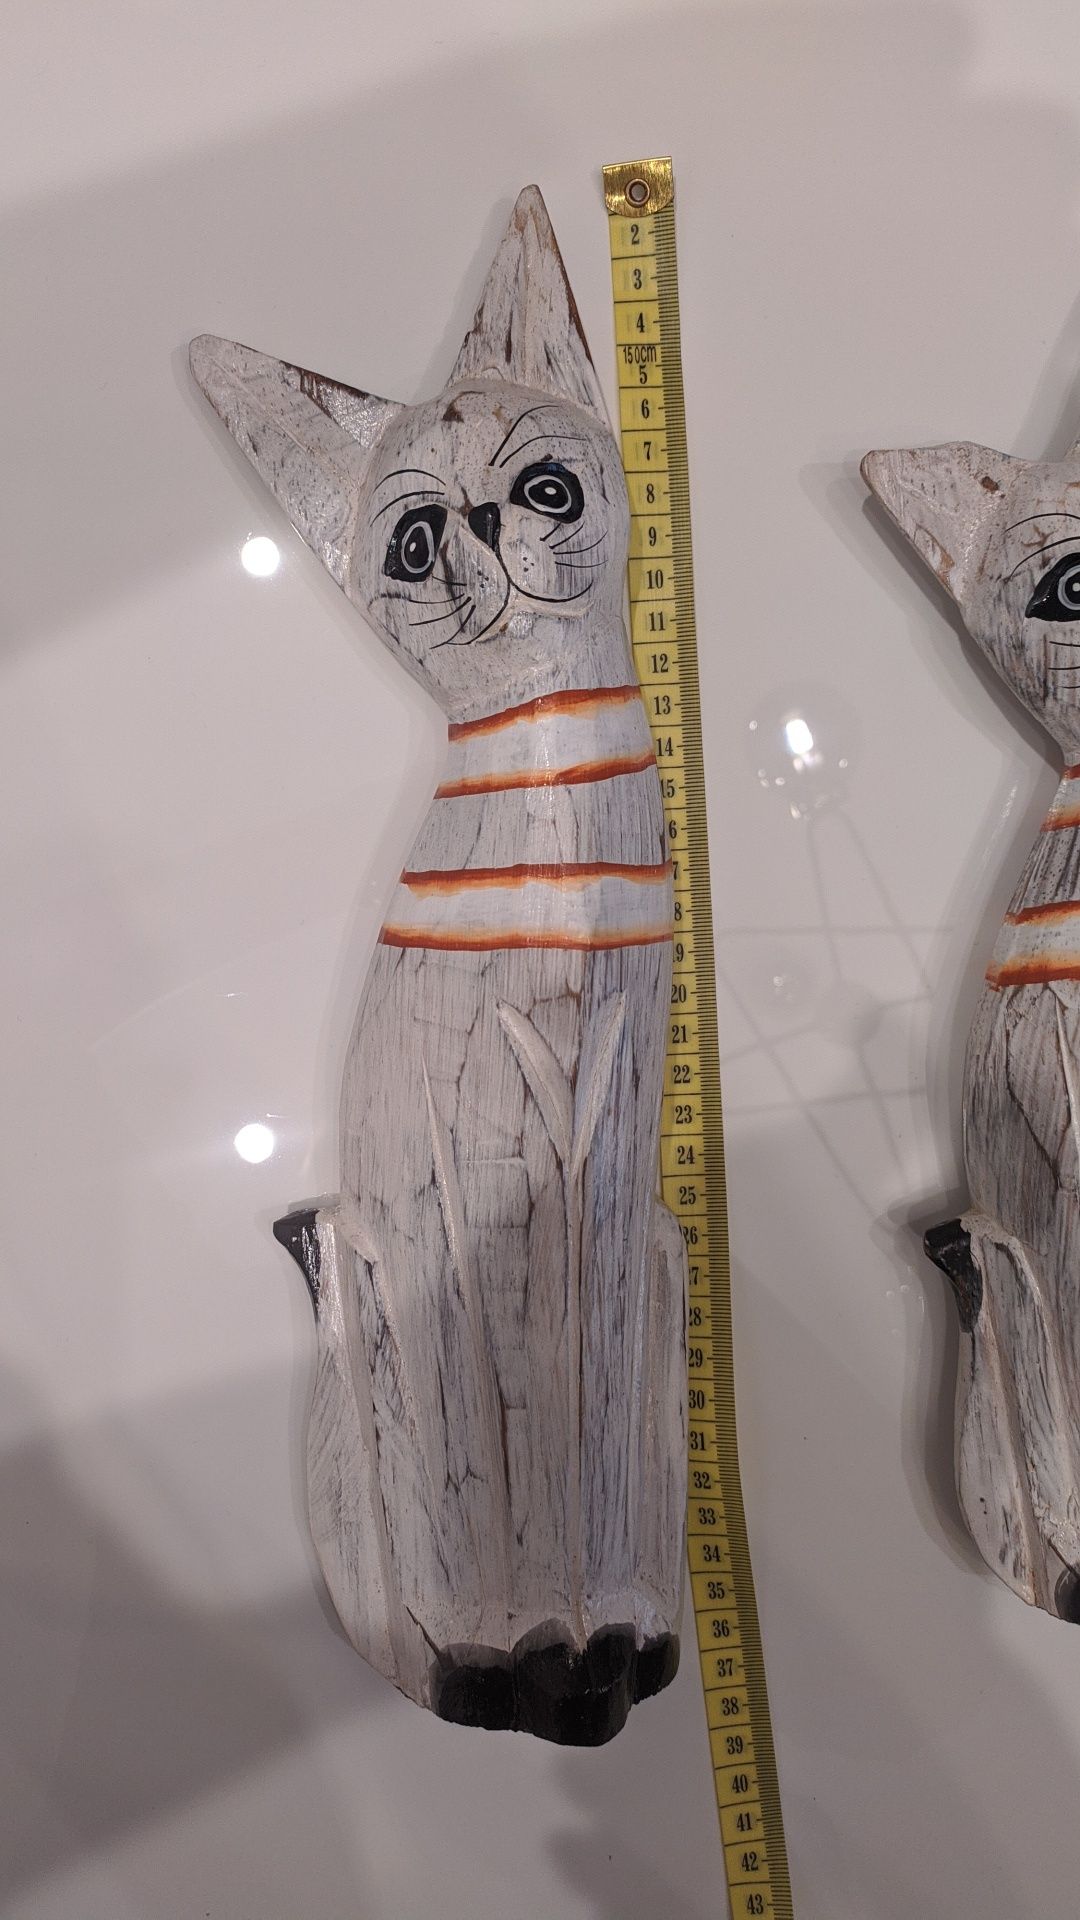 Figurki drewniane koty zestaw 3 sztuk kot drewniany dekoracja